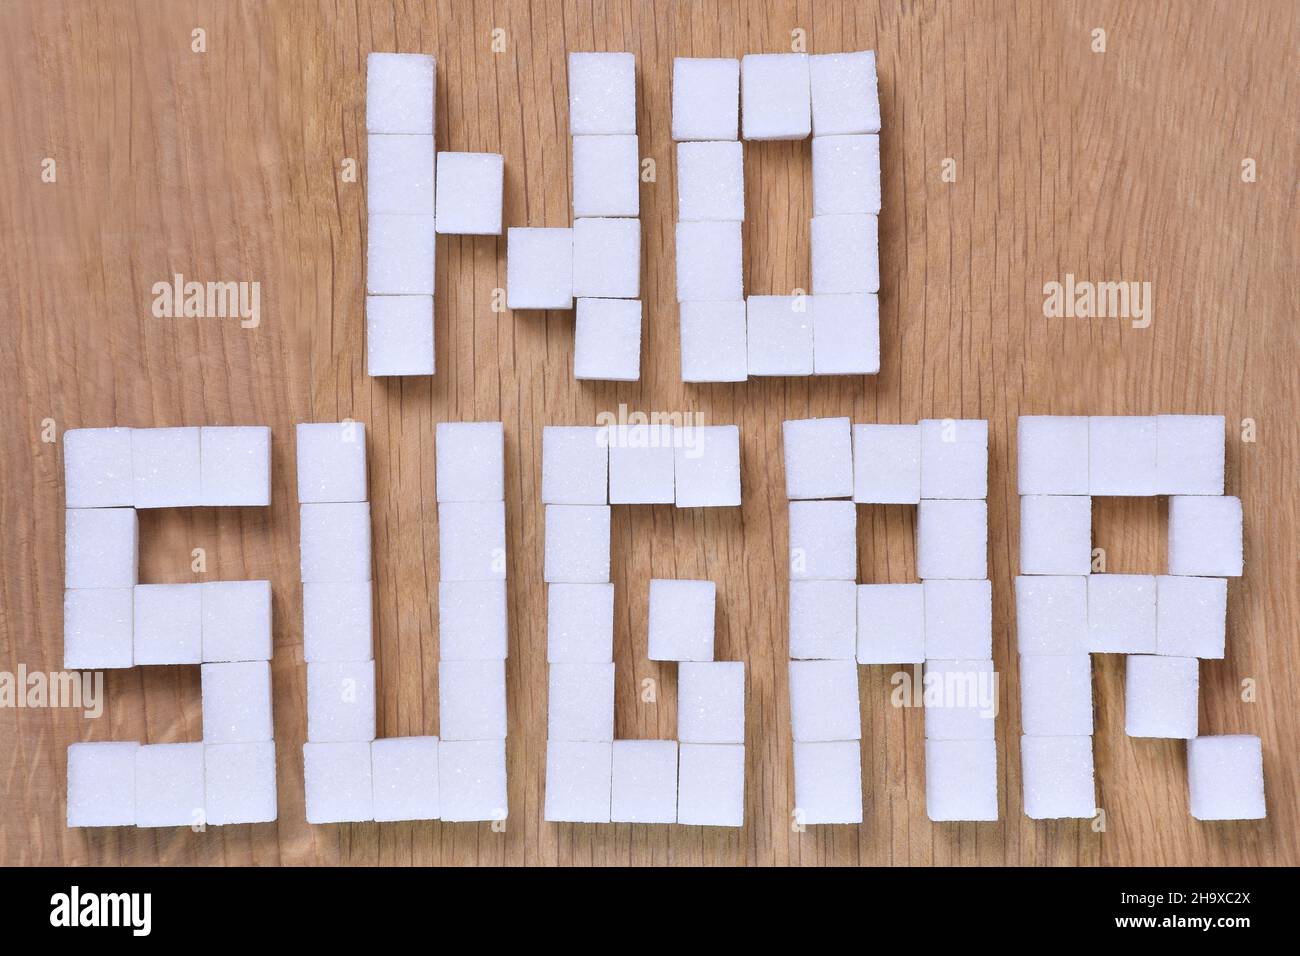 Die Worte NO SUGAR, ausgekleidet mit Würfeln raffinierten Zuckers auf braunem Holzgrund, sind verboten. Nahaufnahme Stockfoto